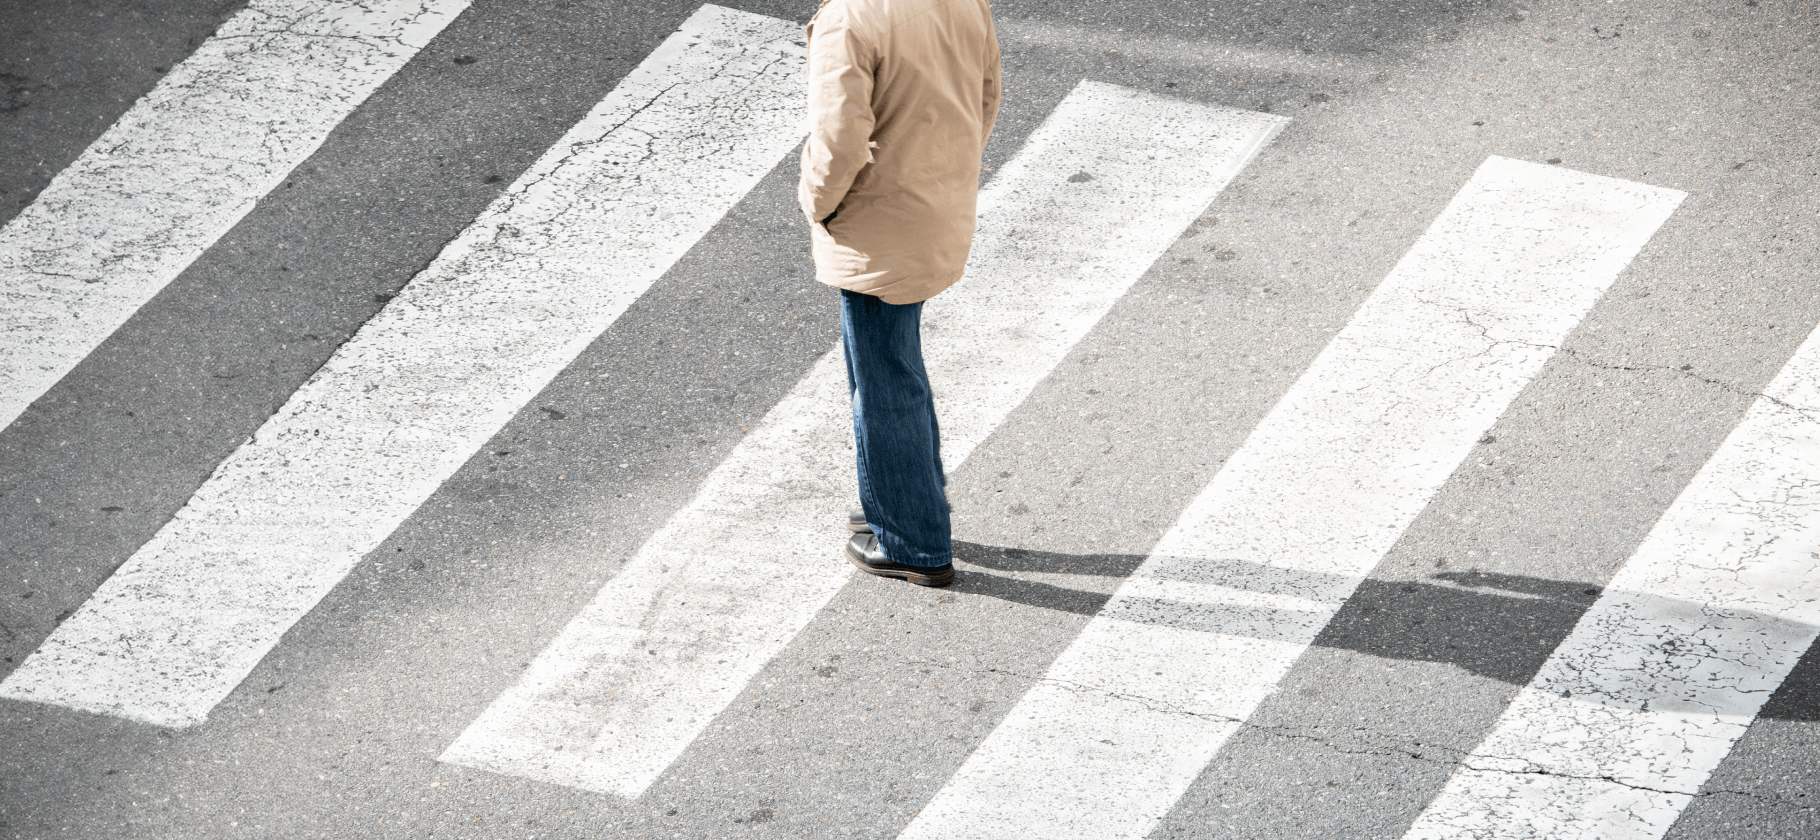 5 правил для пешеходов и штраф за их нарушение